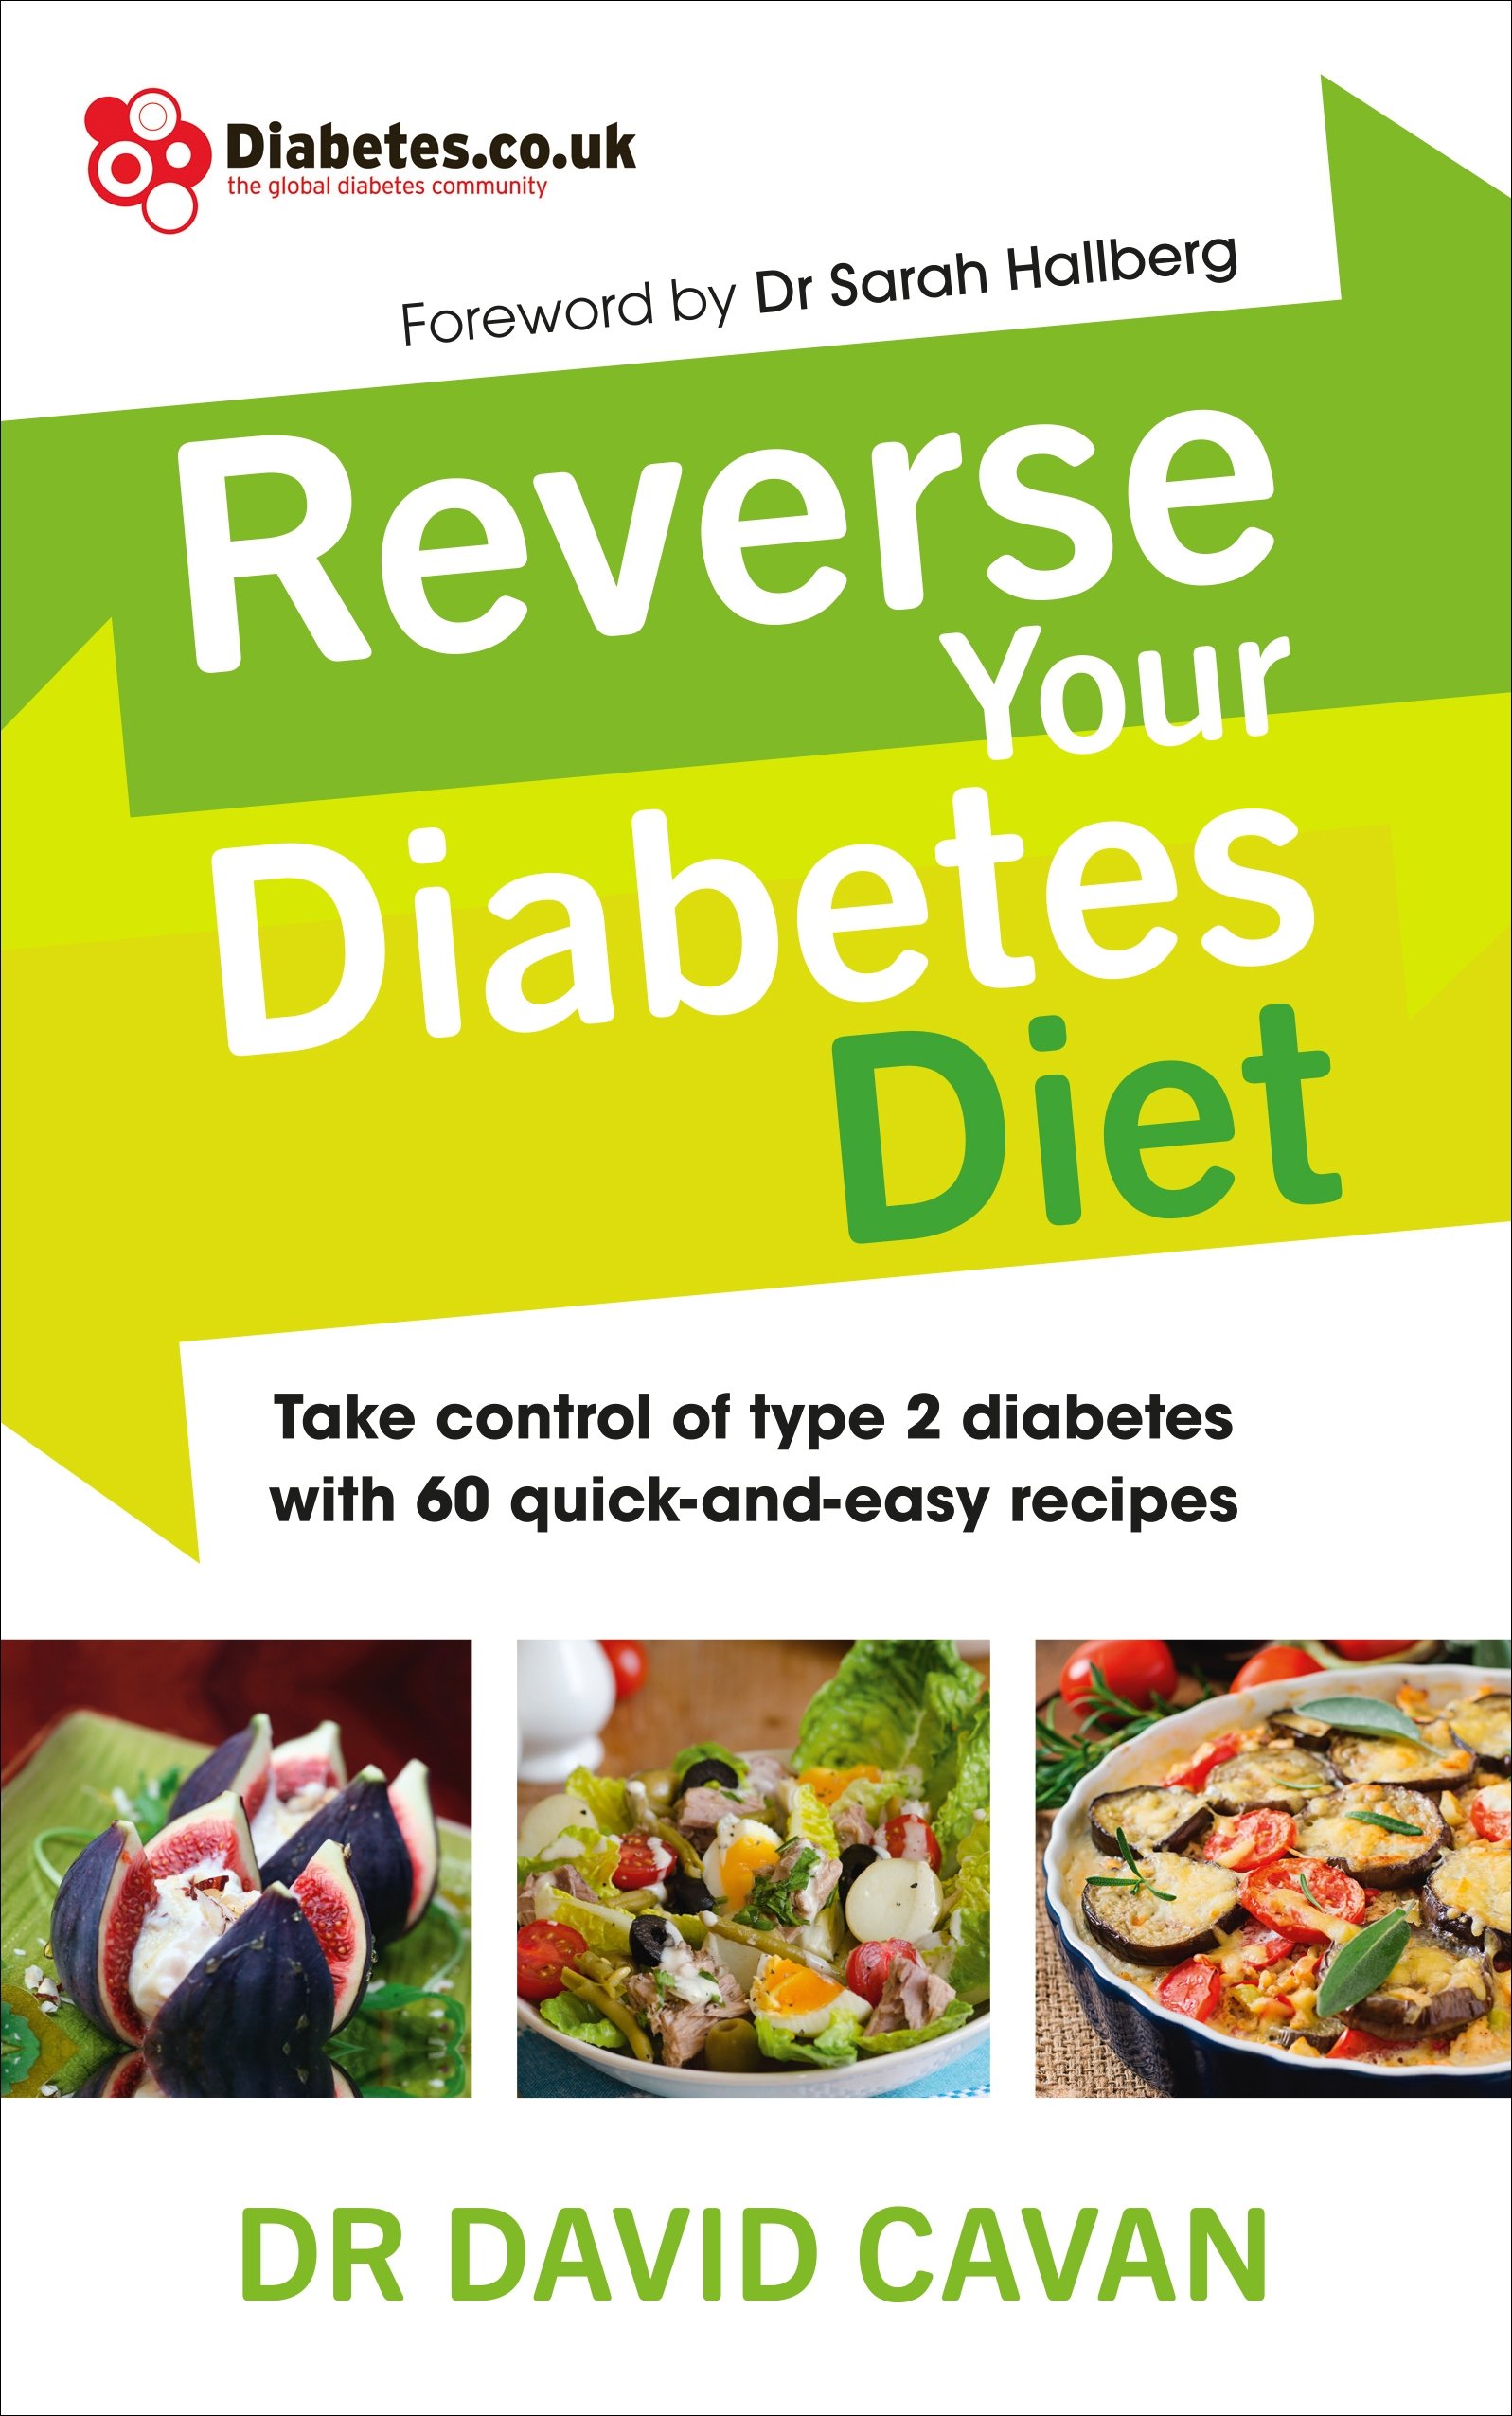 Reverse Your Diabetes Diet by David Cavan